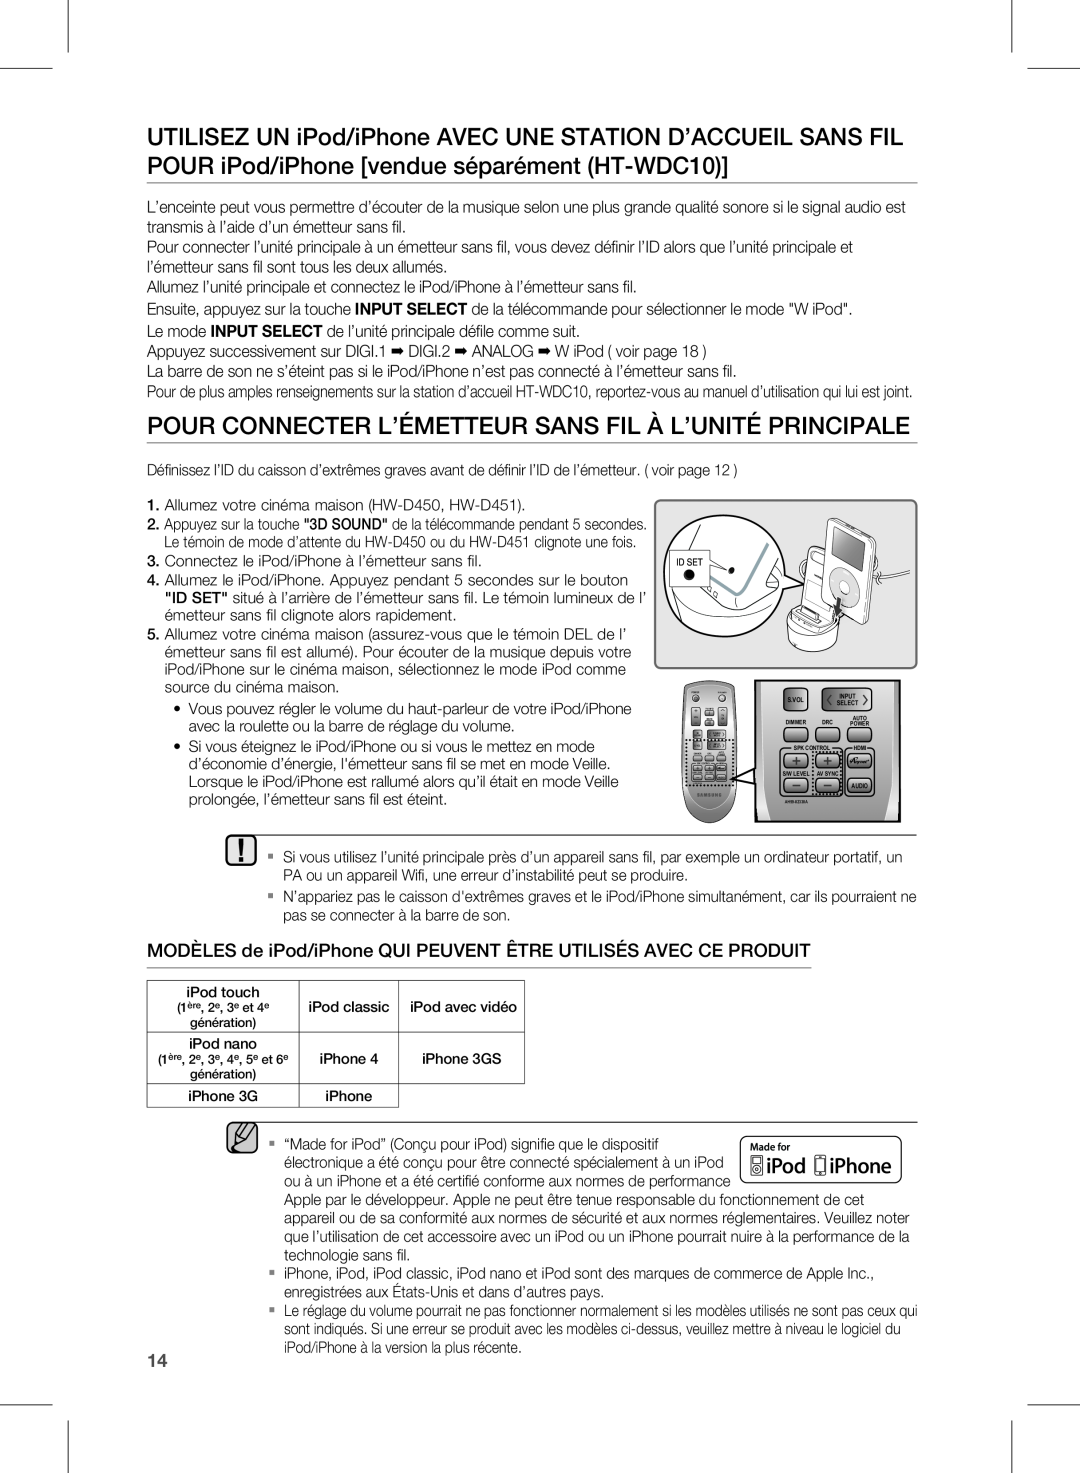 Samsung user manual Allumez votre cinéma maison HW-D450, HW-D451 